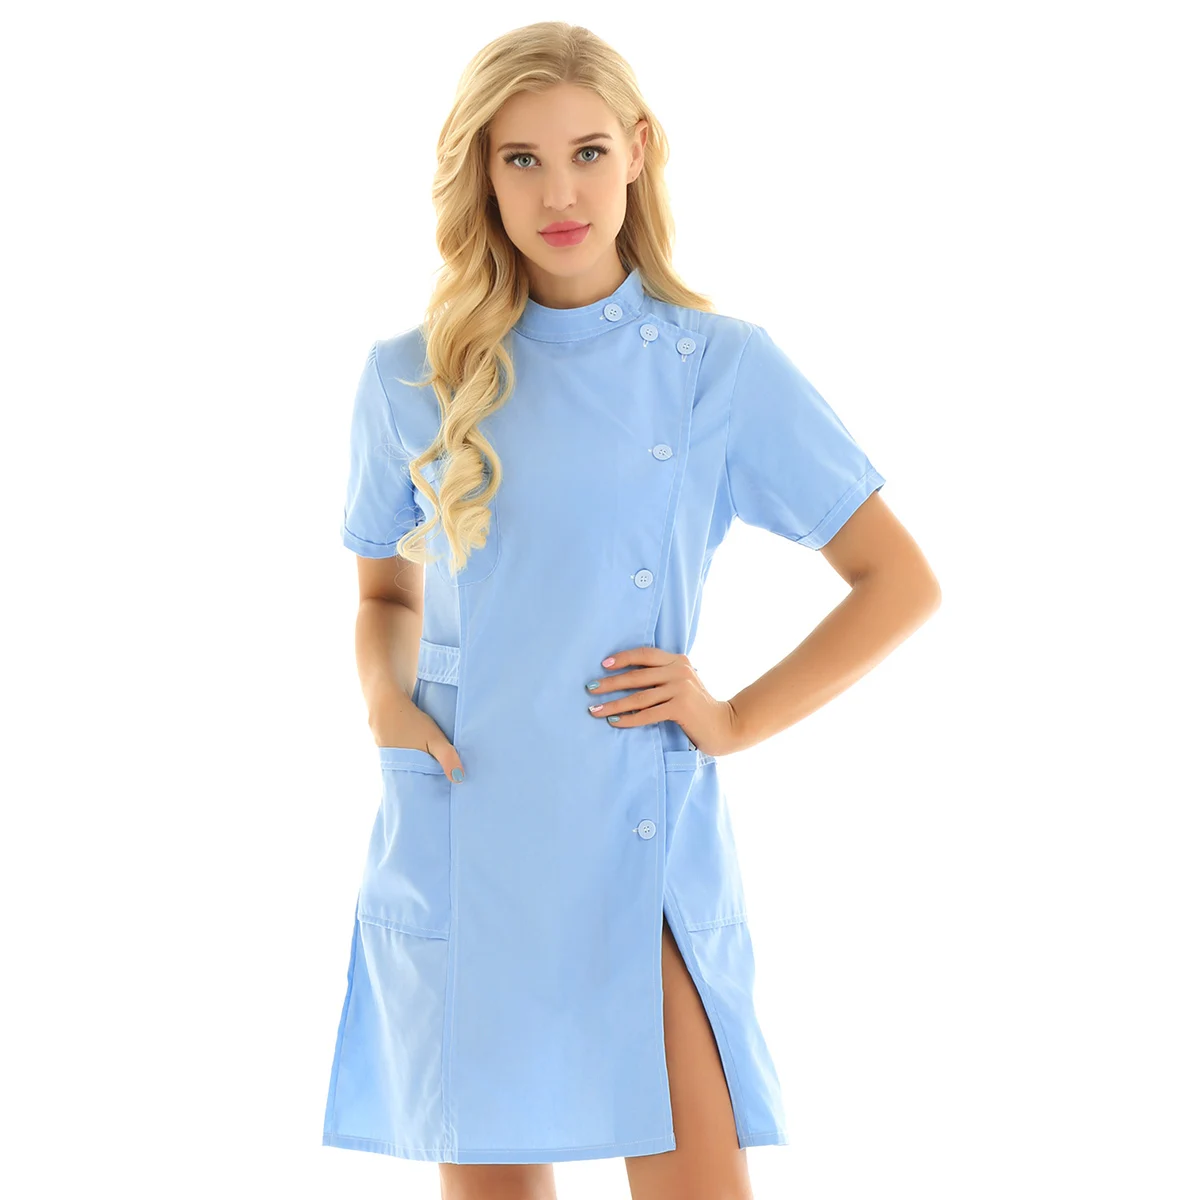 Медицинские услуги лабораторное пальто униформа для доктора костюм сексуальная униформа медсестры платье для взрослых женщин тонкий хлопок БОЛЬНИЦА скраб Рабочая одежда